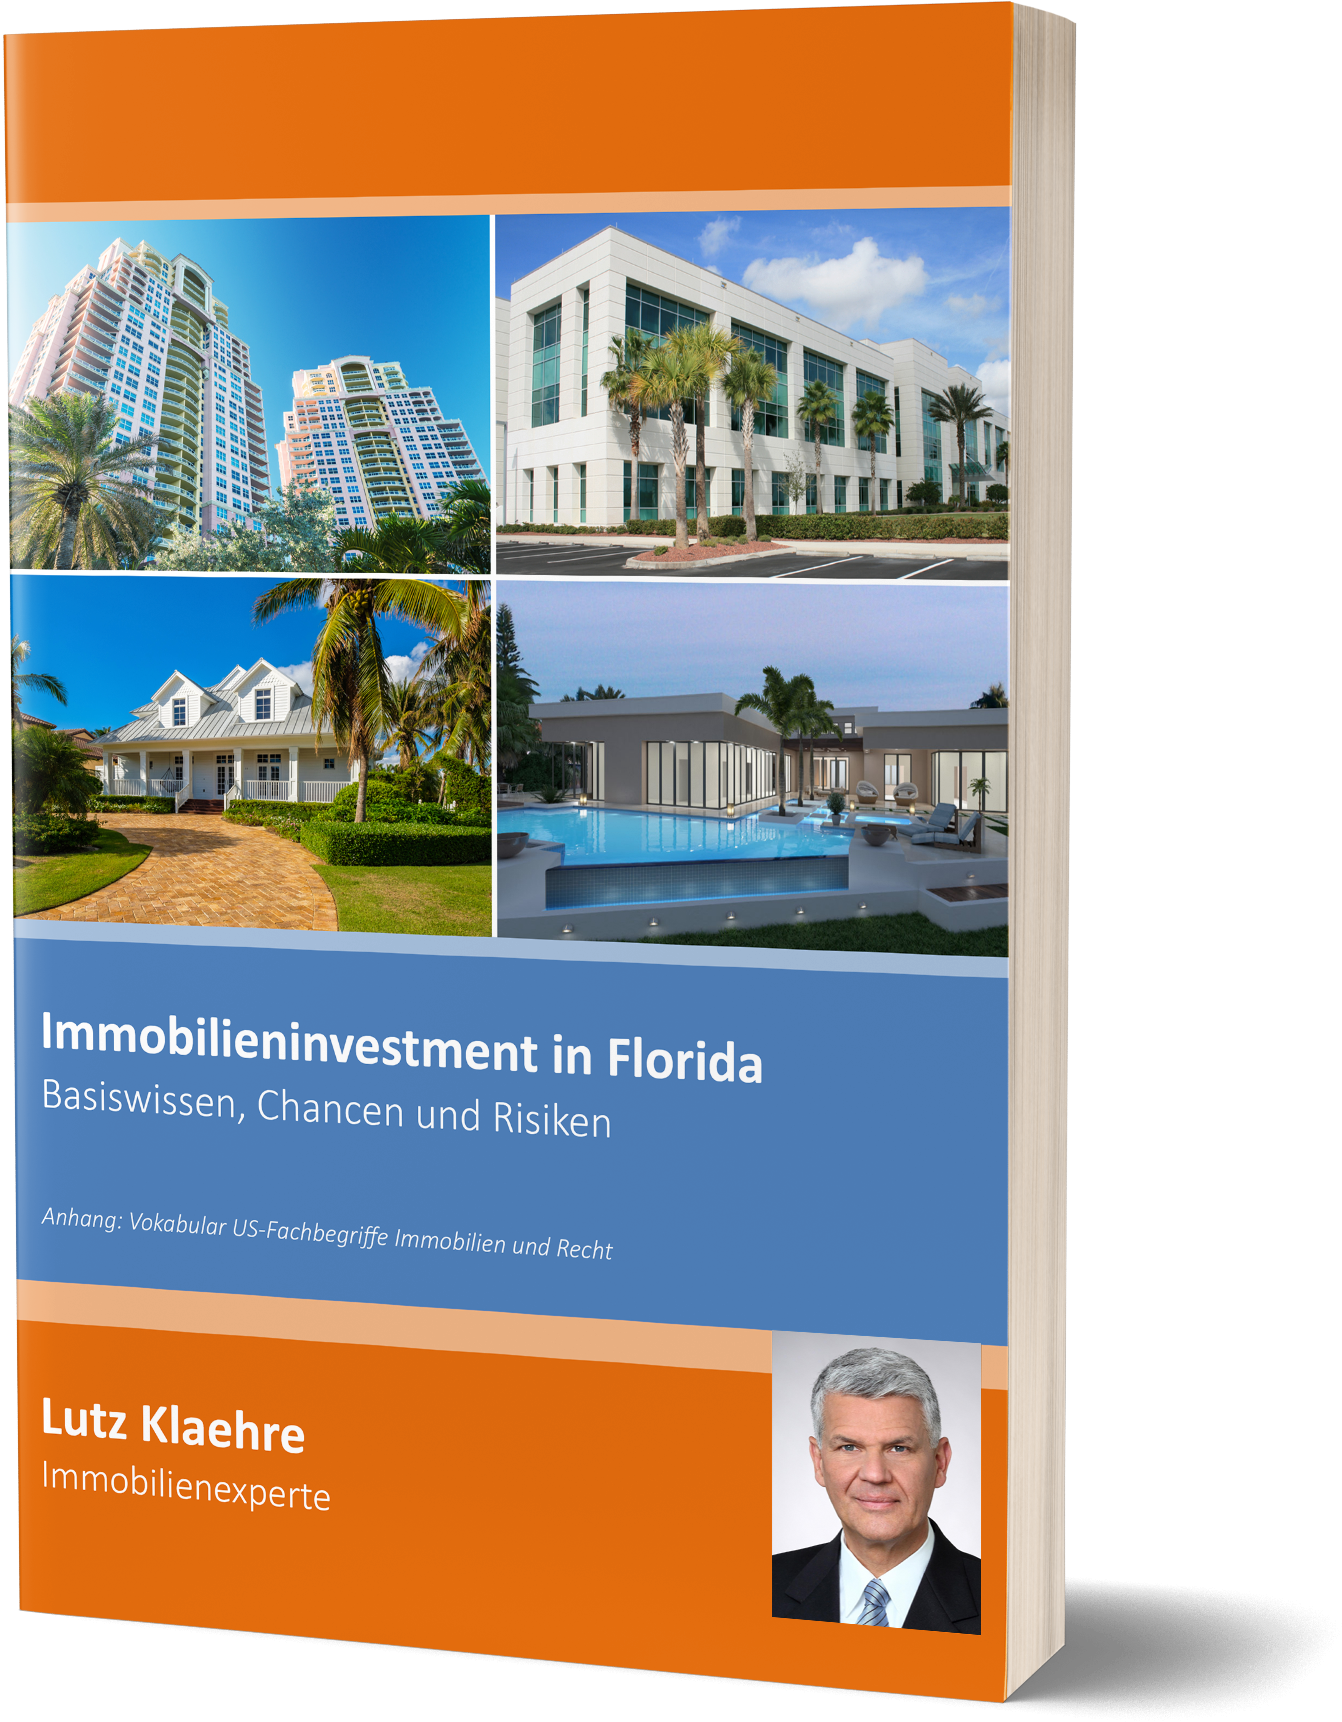 Immobilieninvestment in Florida von Lutz Klaehre